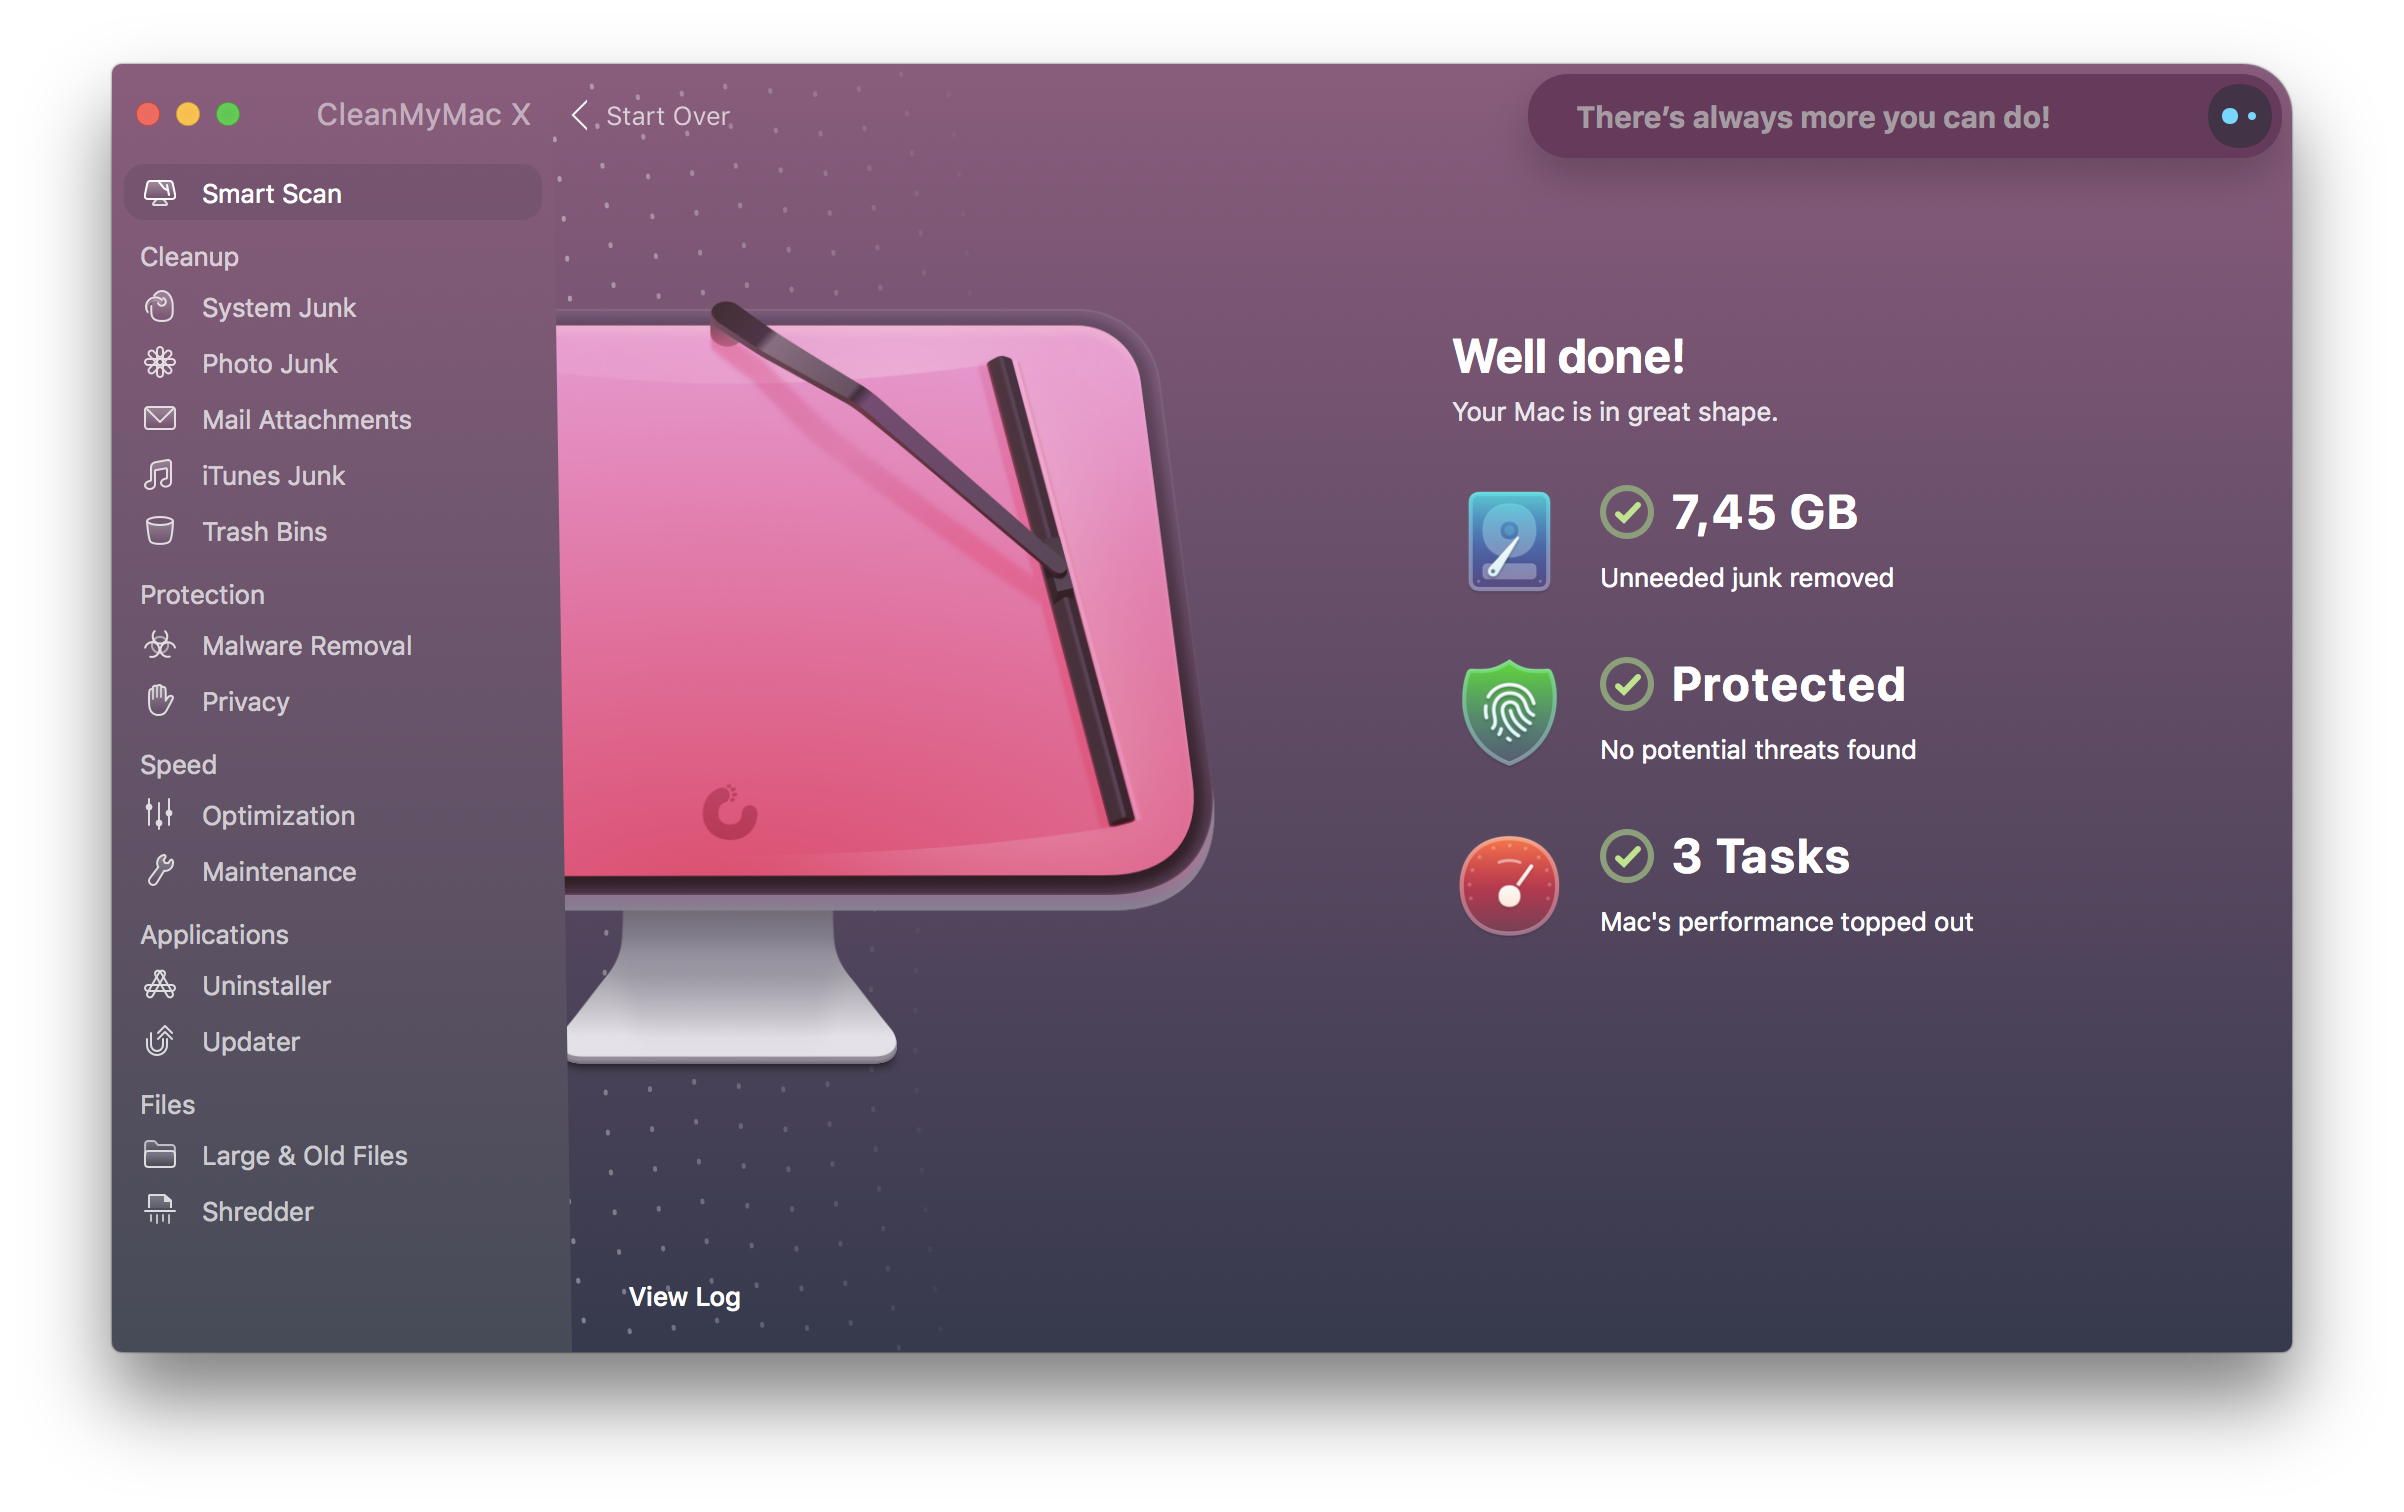 MacPaw hadirkan CleanMyMac X dengan tampilan dan sejumlah fitur baru